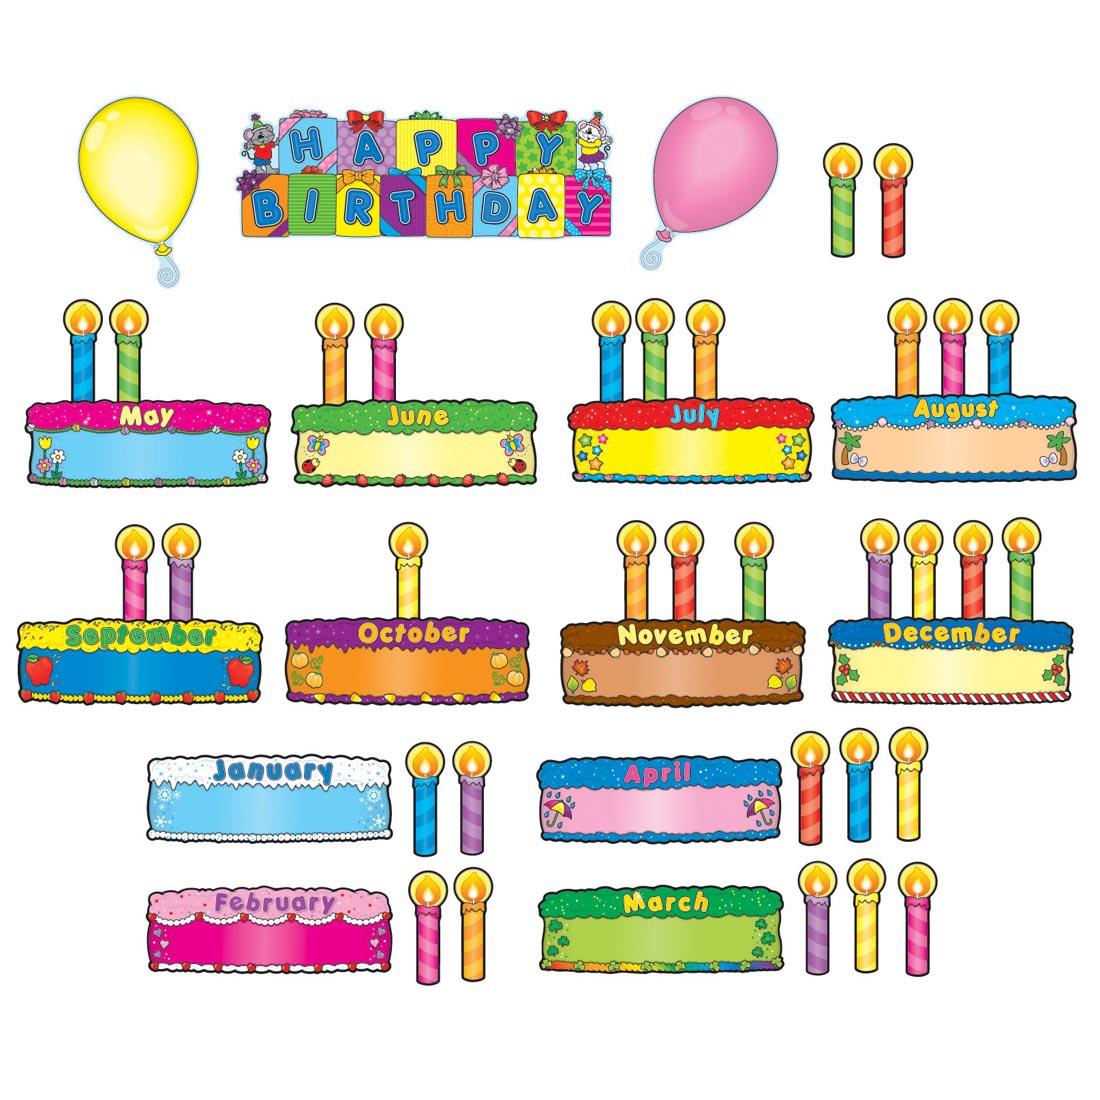 Birthday Cakes Mini Bulletin Board Set by Carson Dellosa